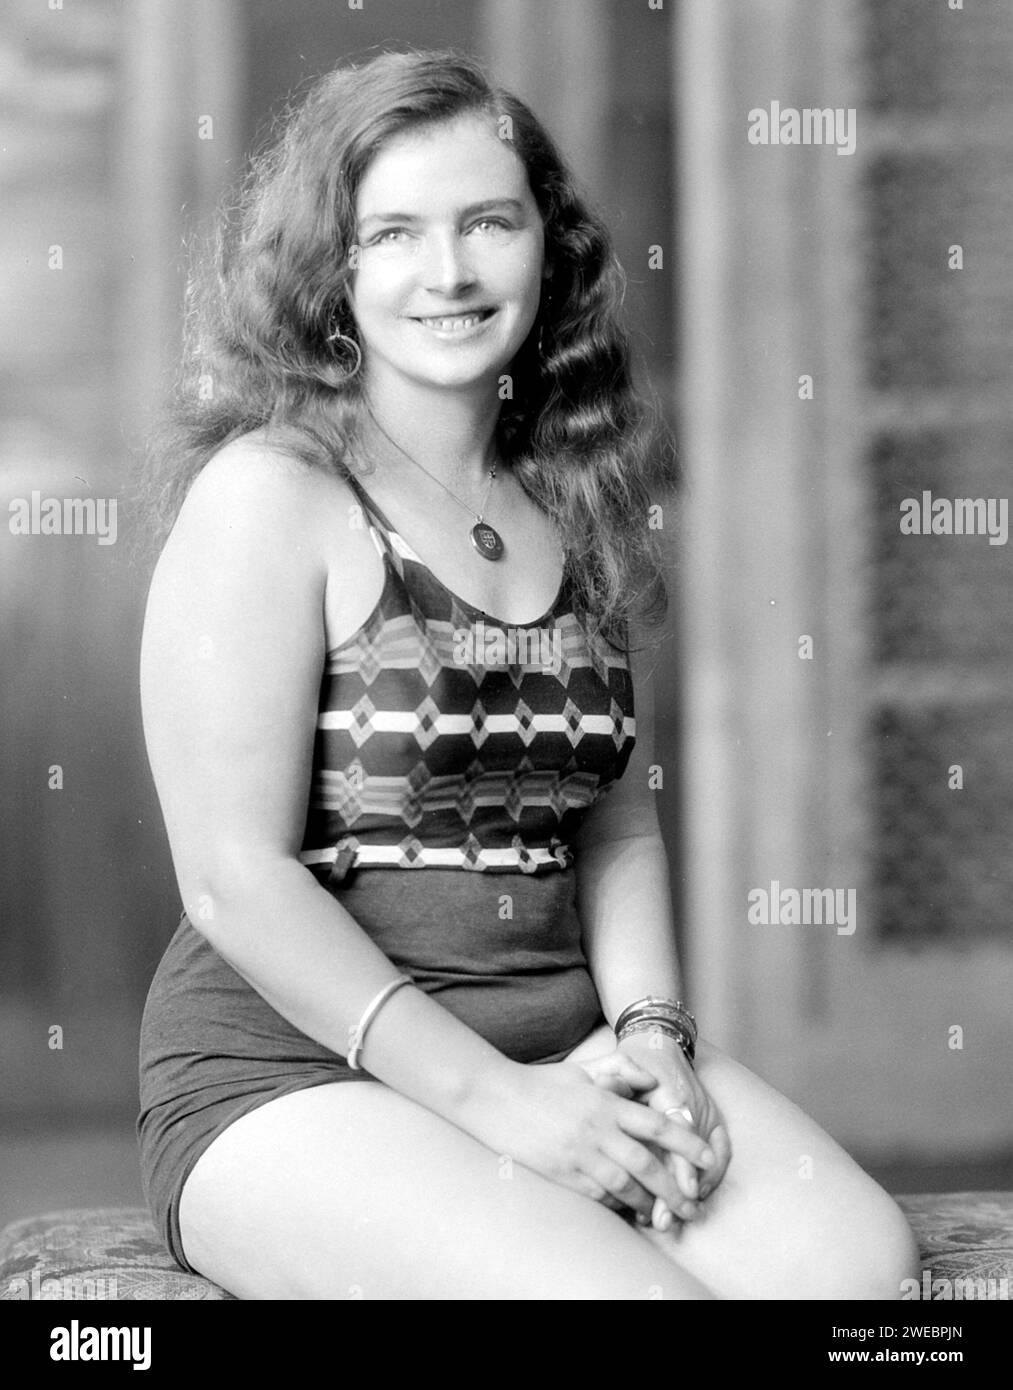 Mercedes Gleitze (1900 - 1981) nuotatrice professionista britannica, la prima persona conosciuta a nuotare nello stretto di Gibilterra e la prima donna britannica a nuotare nella Manica. Foto Stock